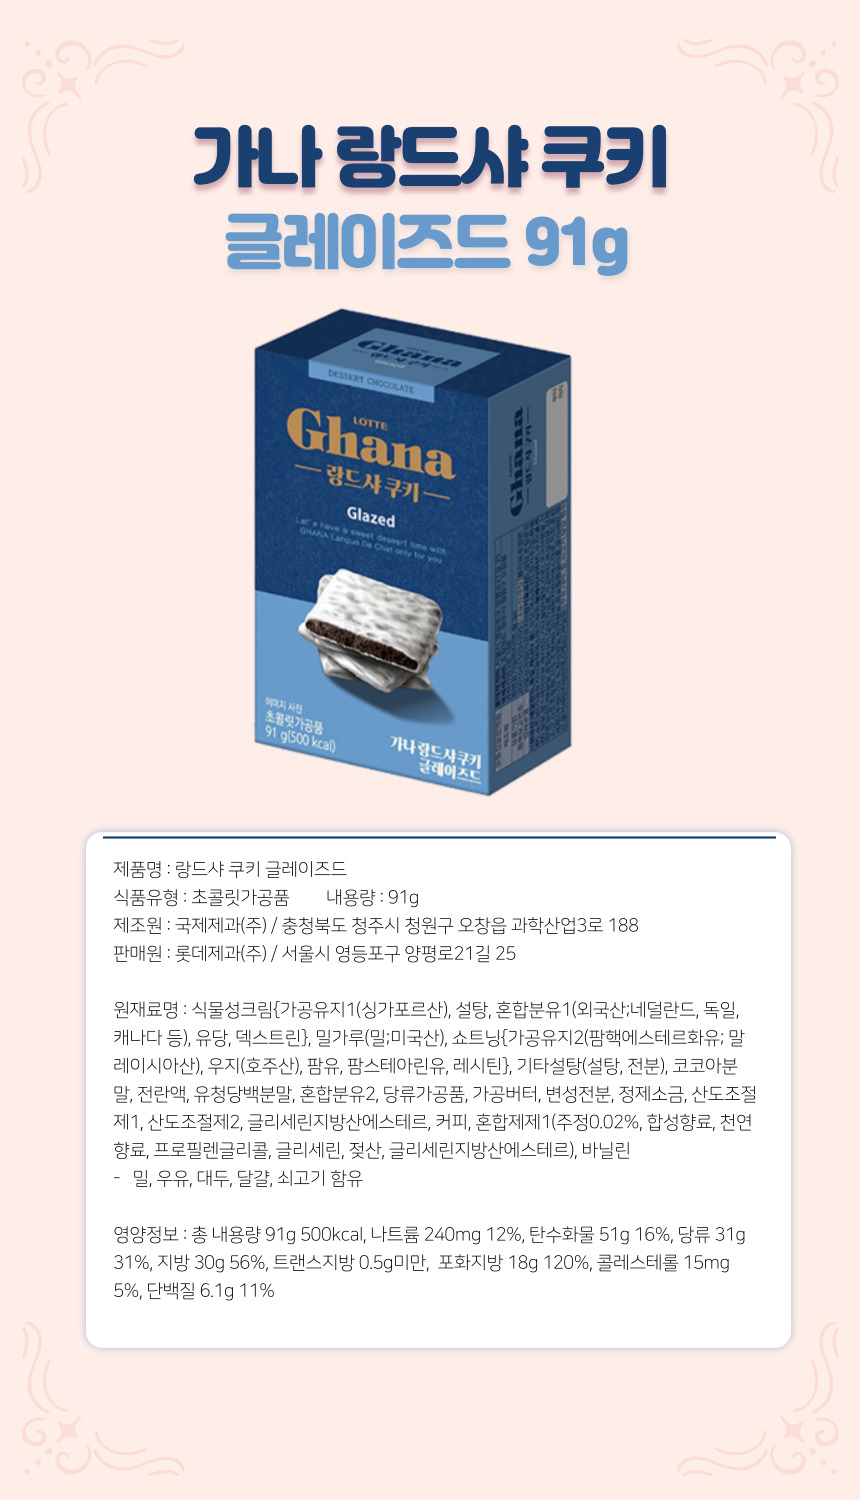 韓國食品-[Lotte] Ghana Langue de chat Cookie (Glazed) 91g